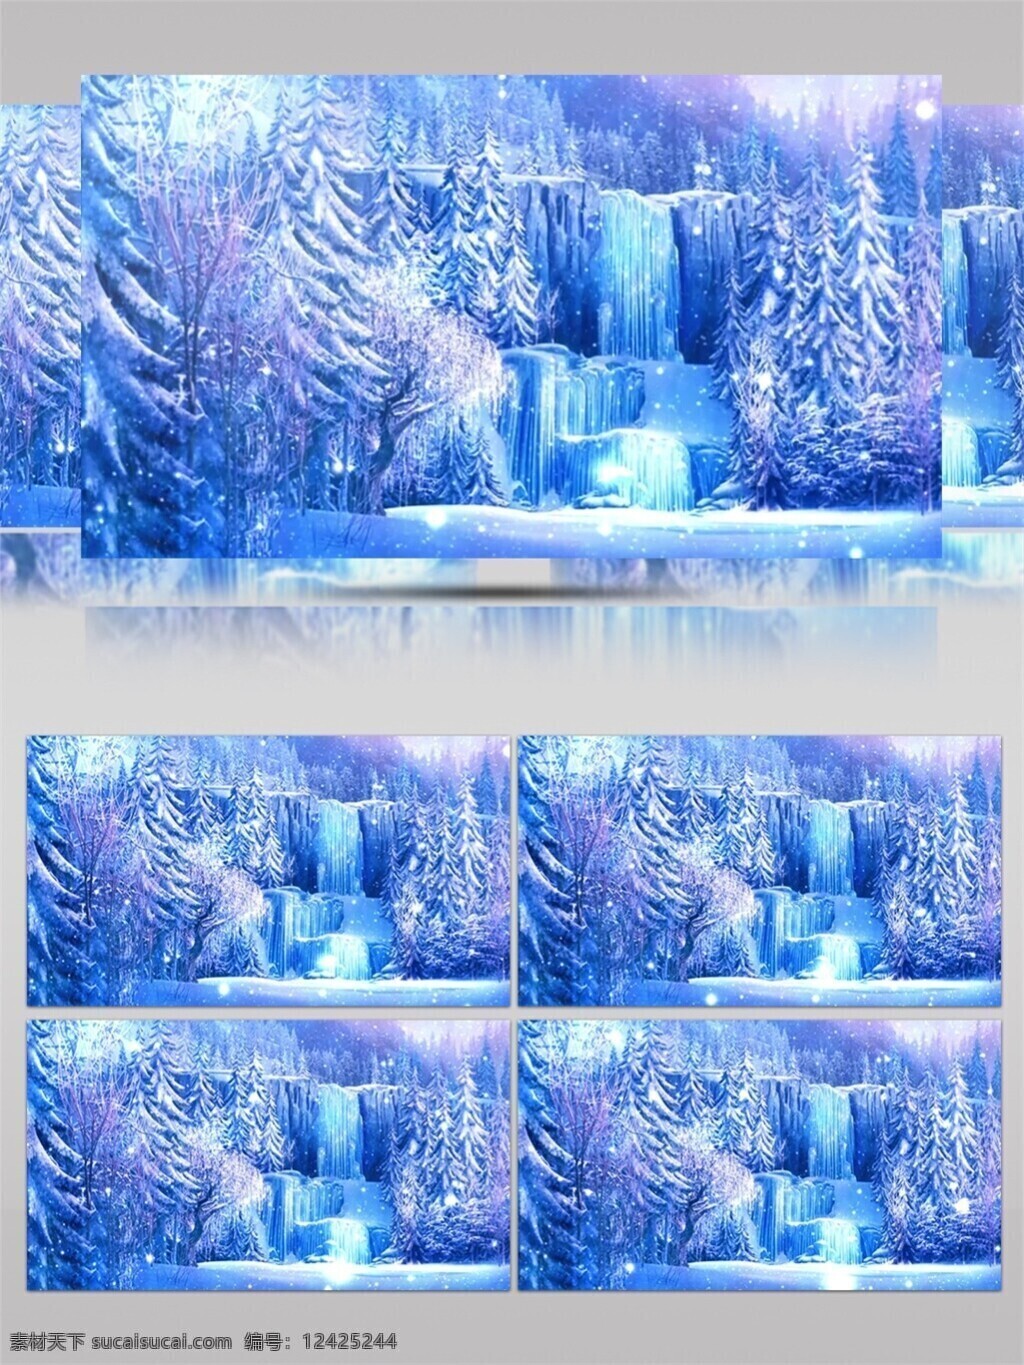 蓝白色 冰 视频 冰雪奇缘 银白雪花 雪树 高质量 背景 特效 华丽银白色